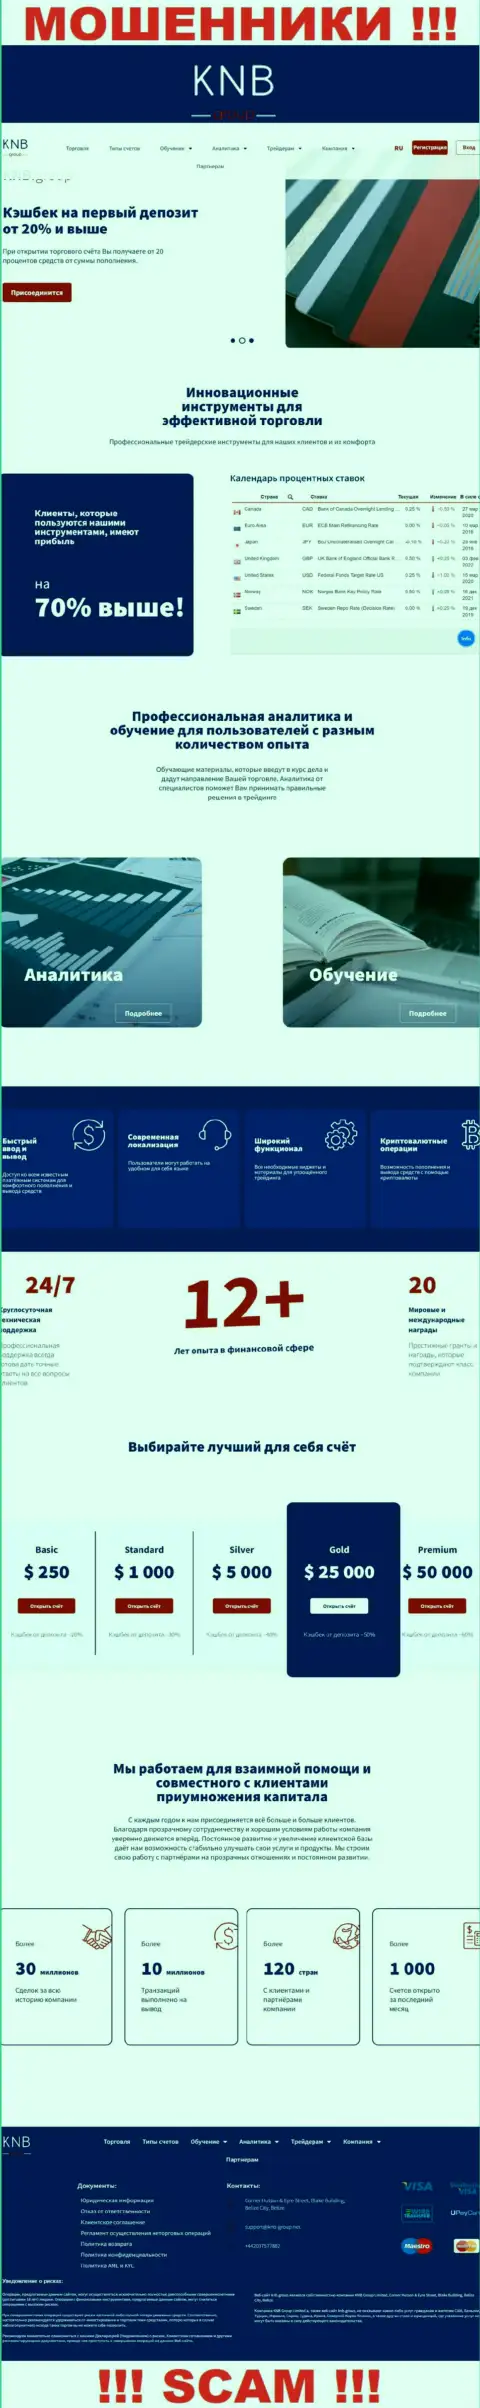 Разбор официального сайта мошенников KNB-Group Net